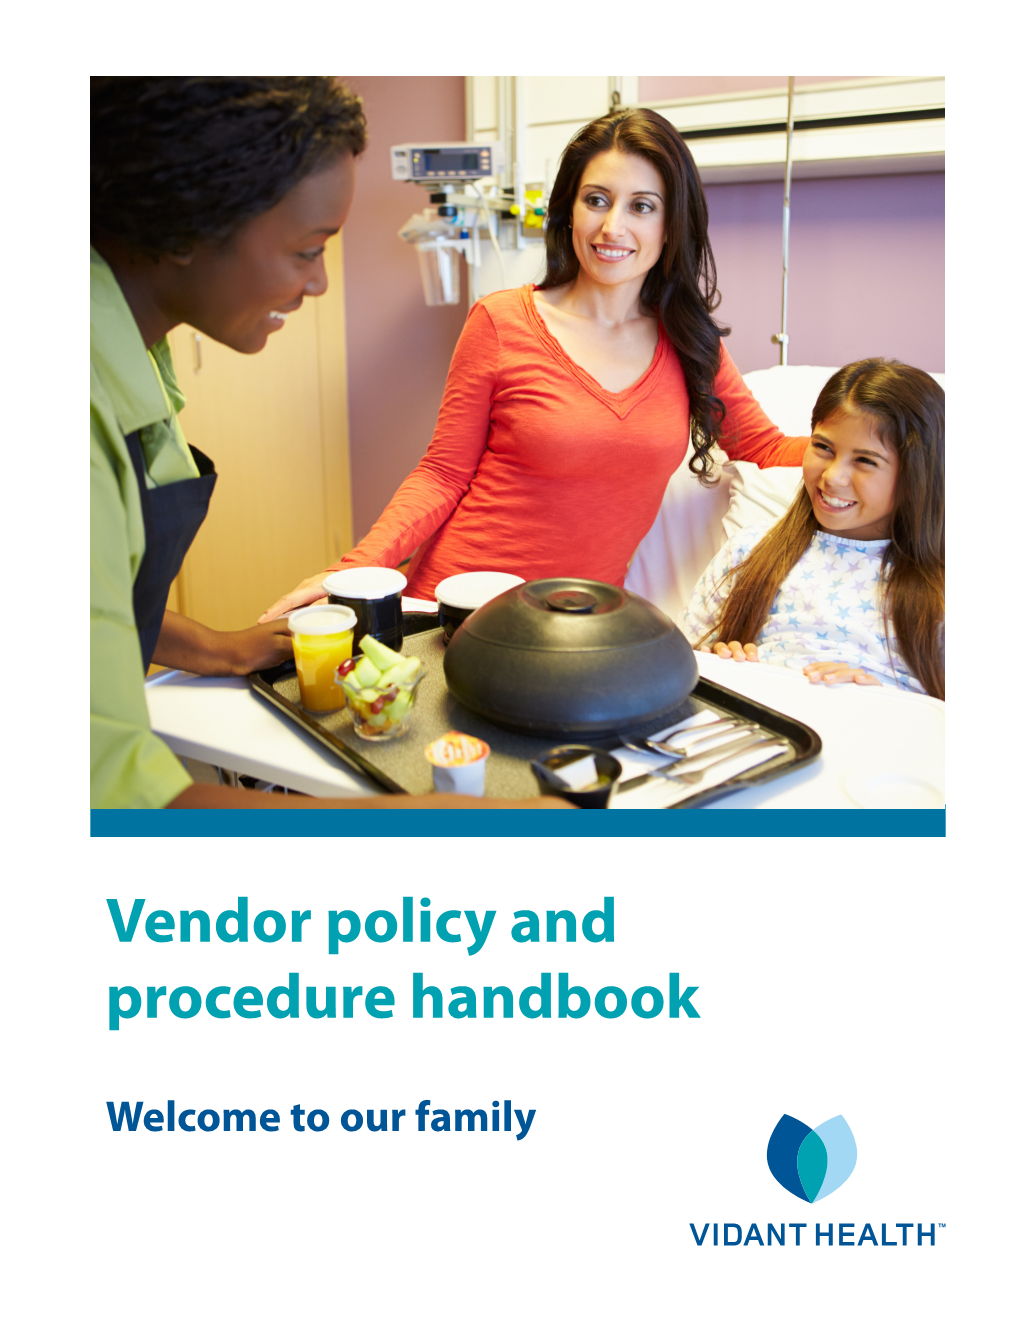 Vendor Policy and Procedure Handbook